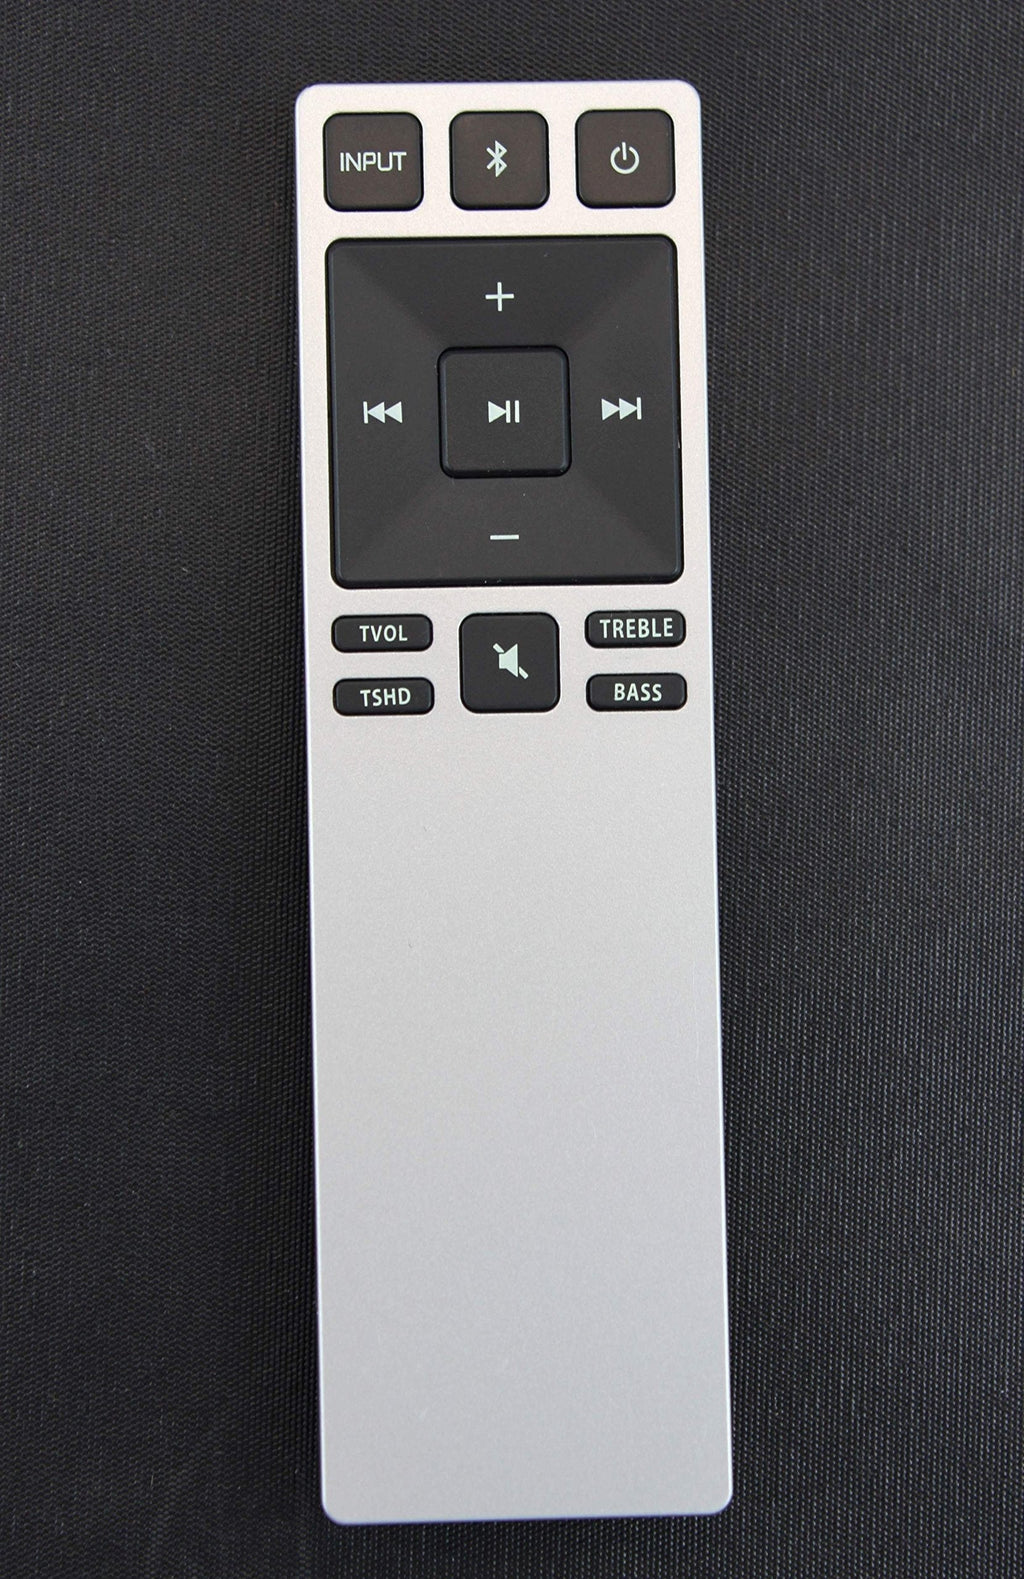 Vizio XRS321 1023-0000128 Home Theater Soundbar Remote Control for Models S2920W-C0, S2920W-C0R, S3820W-C0, S3821W-C0, S3821W-C0R, SB3830-C6M, SB3831-C6M, S2920W-C0 - LeoForward Australia